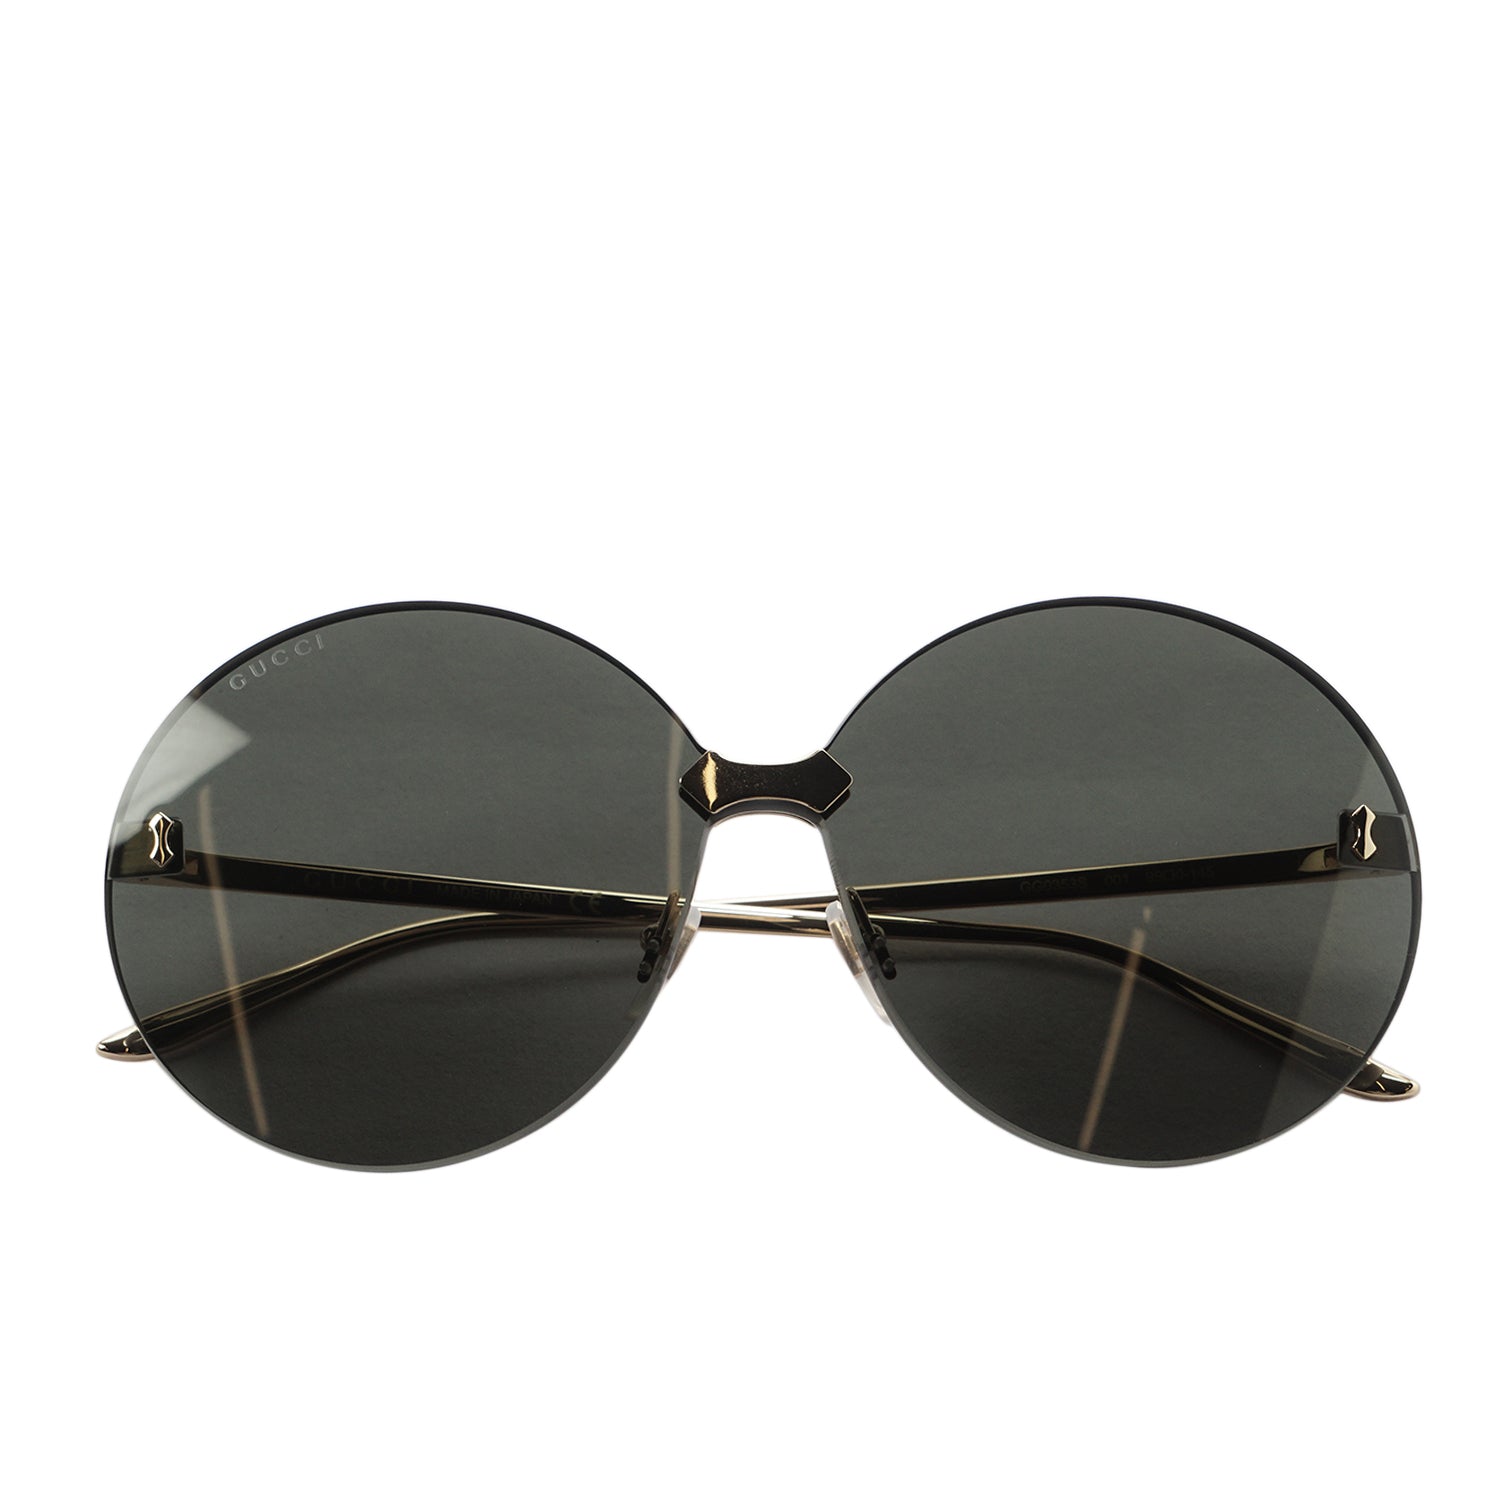 GUCCI: Glasses women - Grey | GUCCI sunglasses GG1203S online at GIGLIO.COM